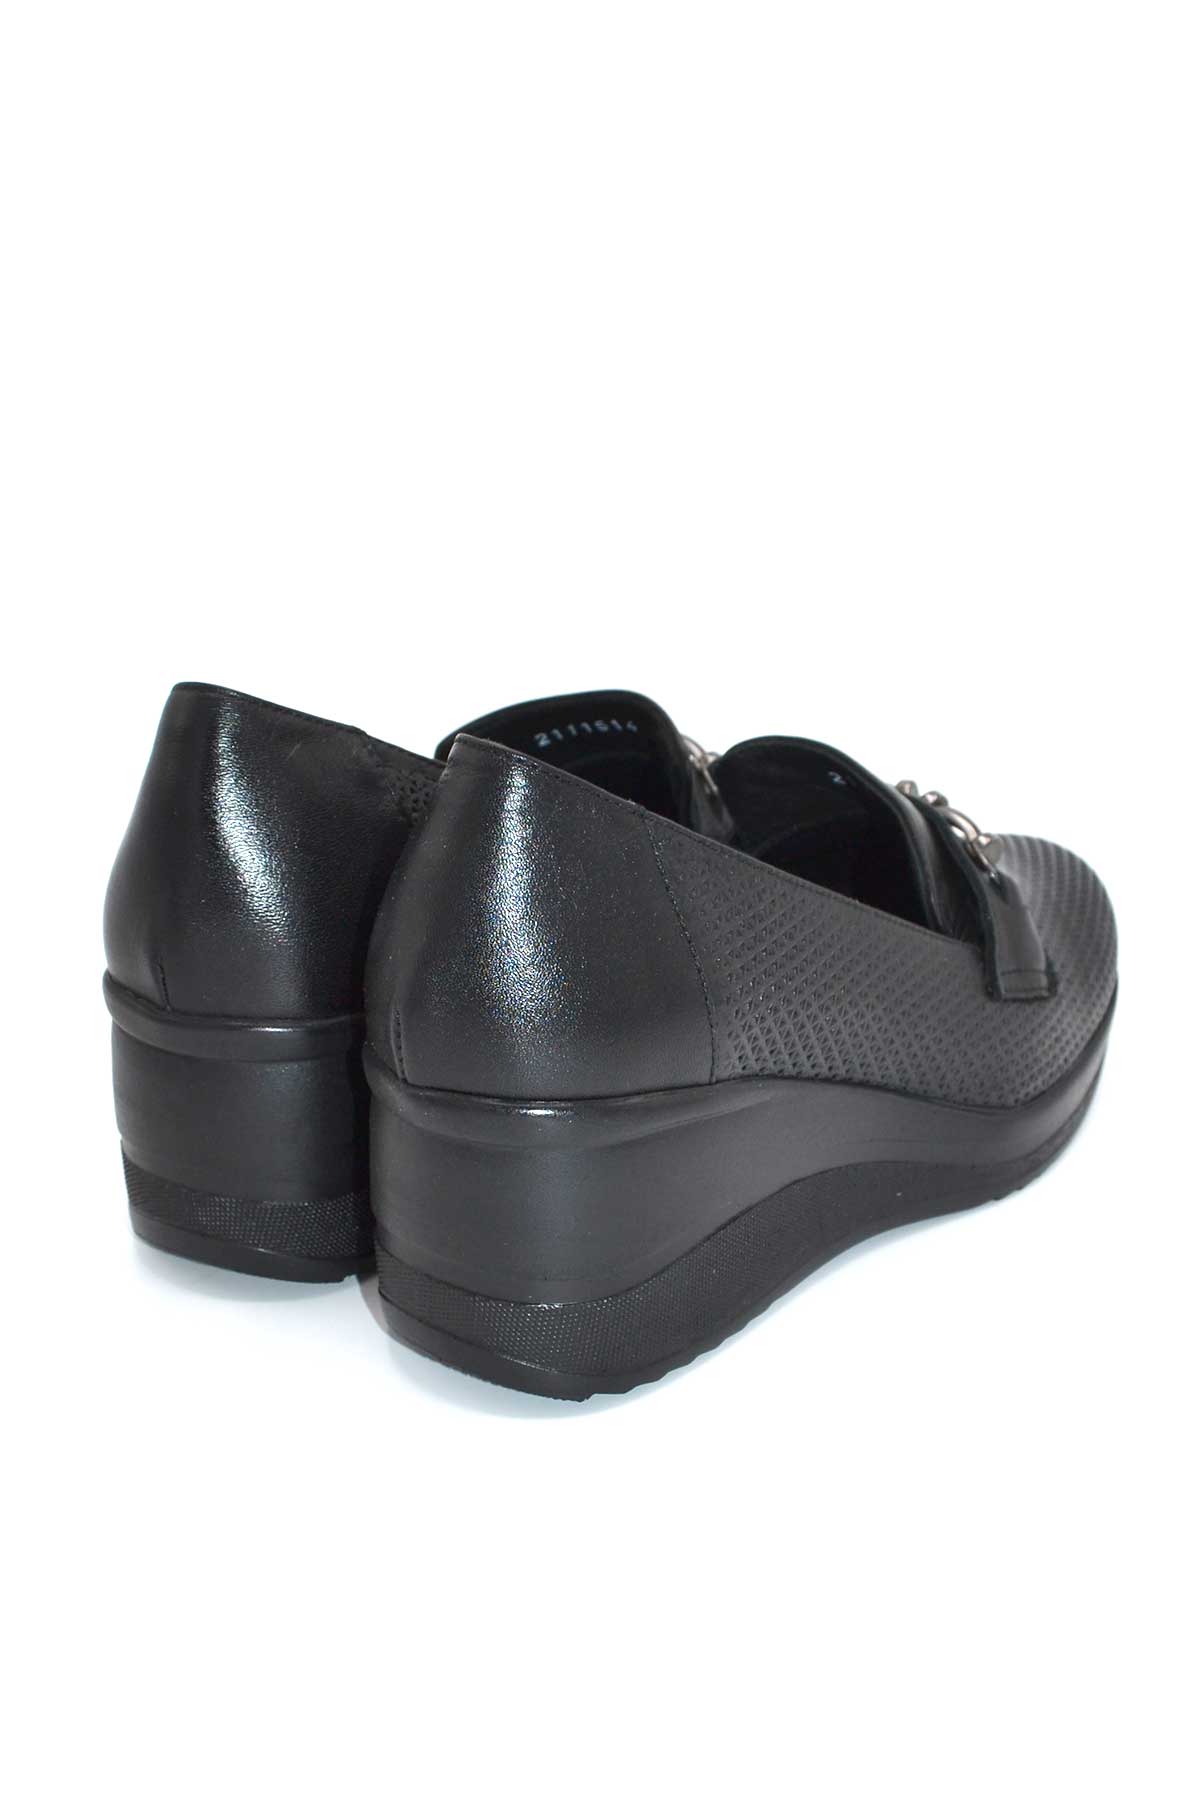 Kadın Dolgu Topuk Deri Ayakkabı Siyah 2111514Y